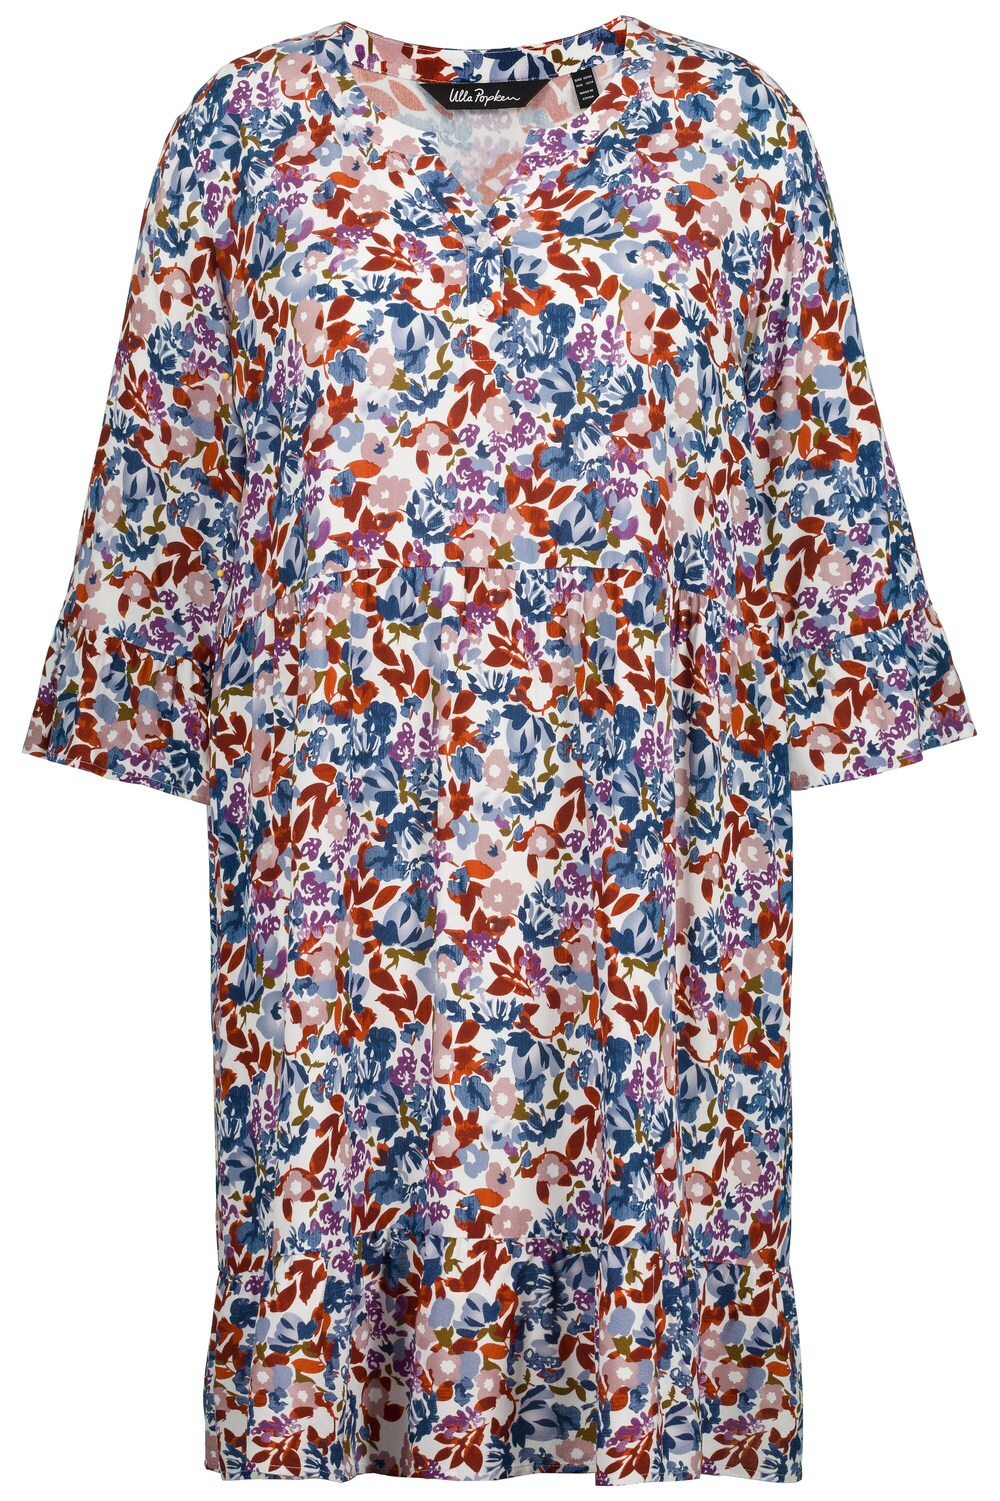 Рубашка-платье Ulla Popken, смешанные цвета